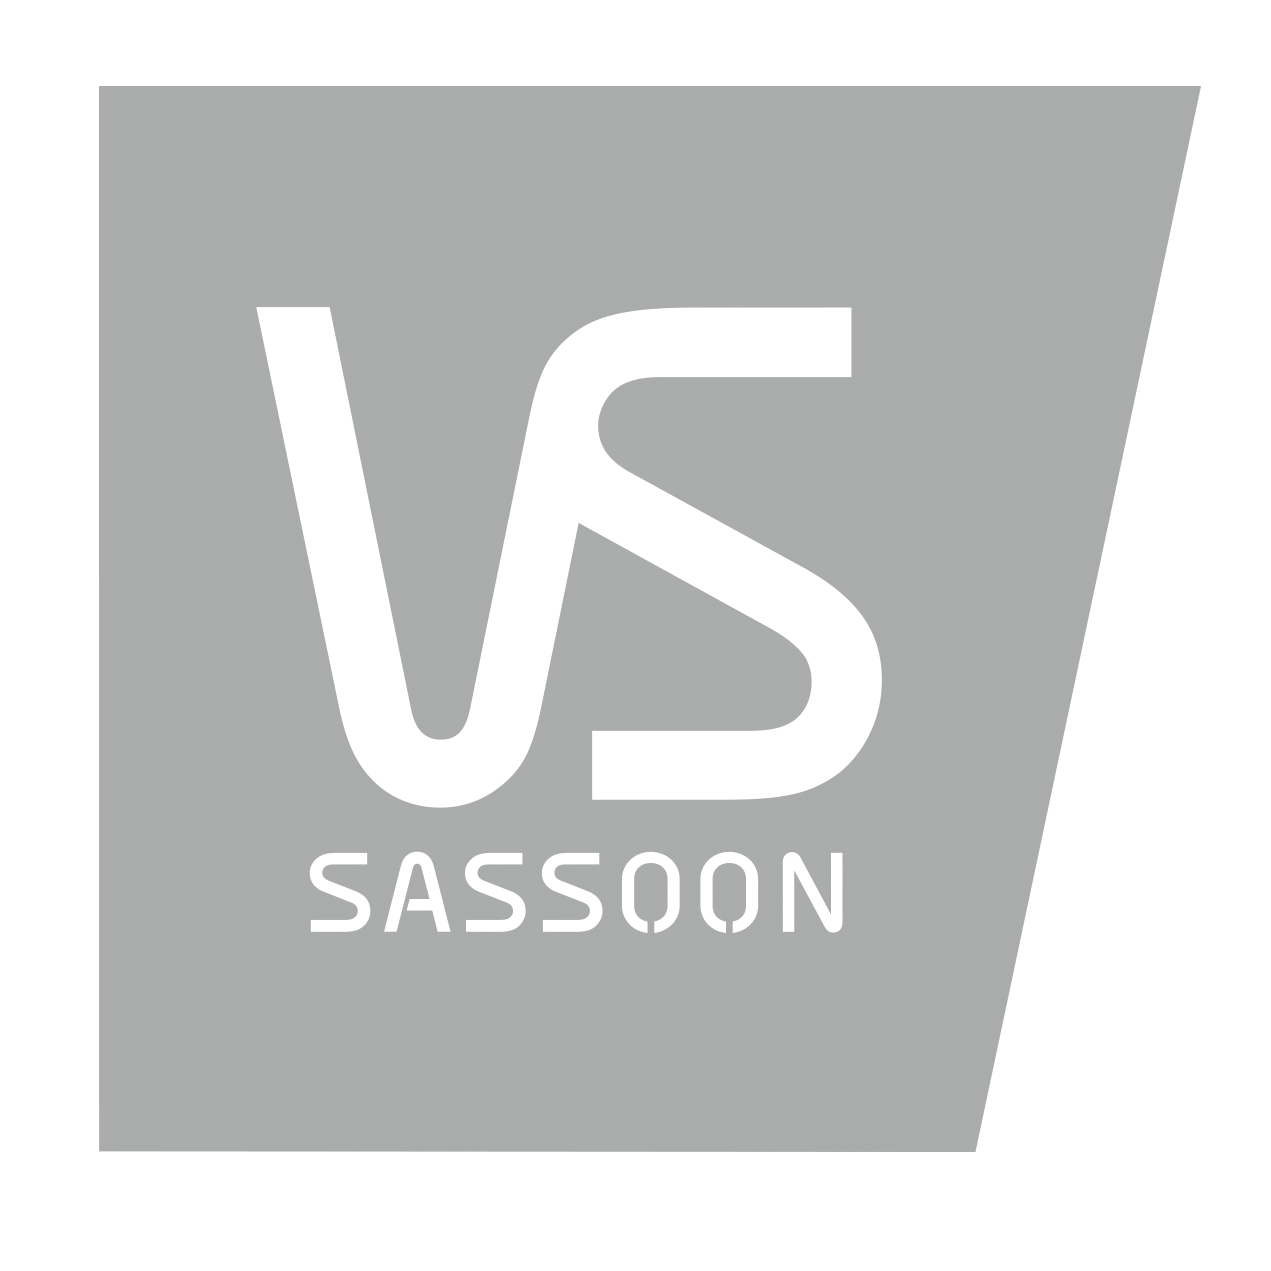 Sponsor logo of VS SASSOON